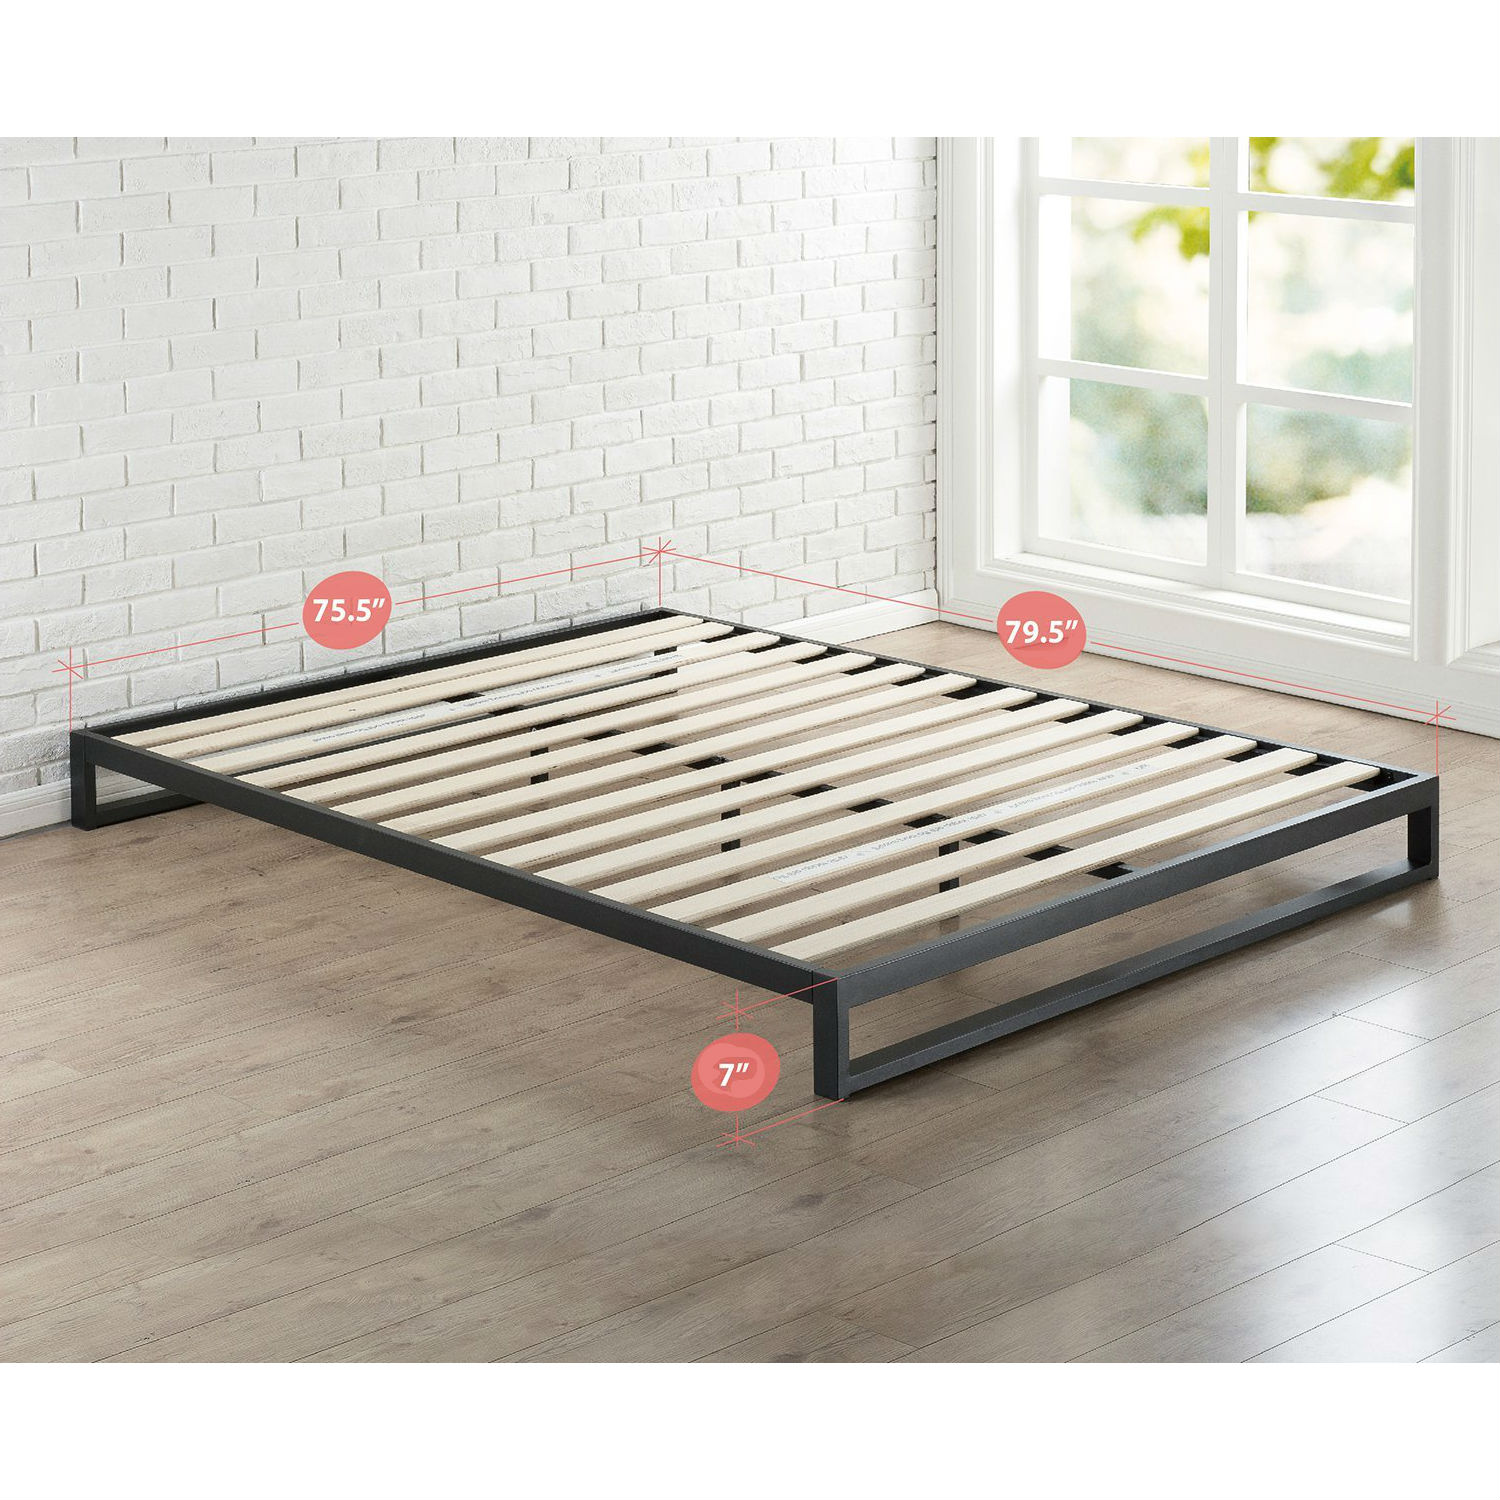 Low Profile Metal Platform Bed Frame, Heavy Duty Bed Frame